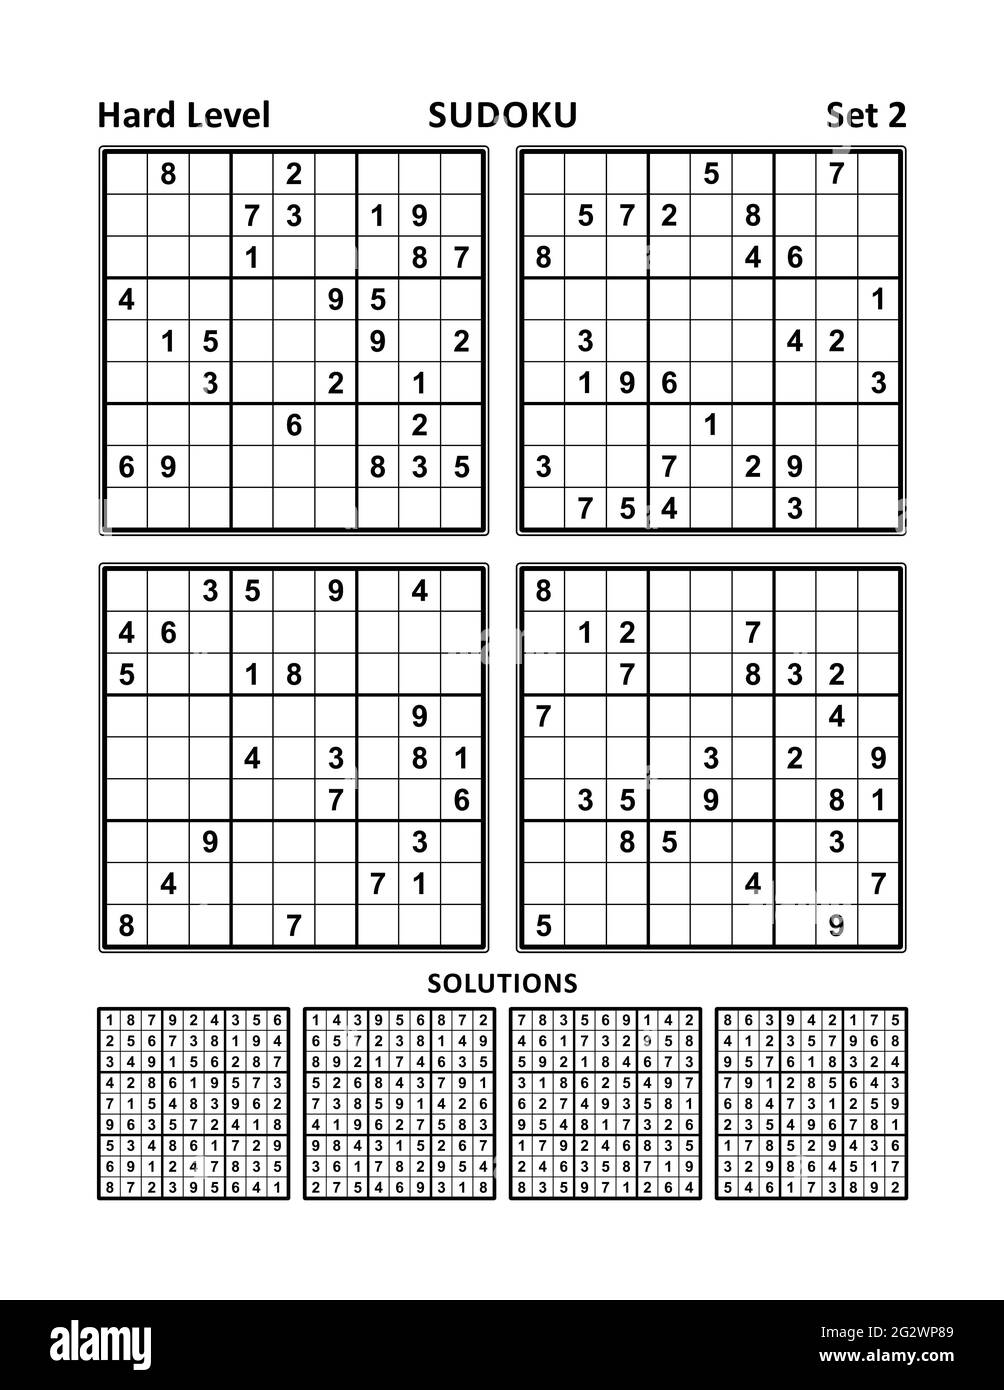 Quattro giochi sudoku di livello difficile, con risposte. Set 2. Foto Stock